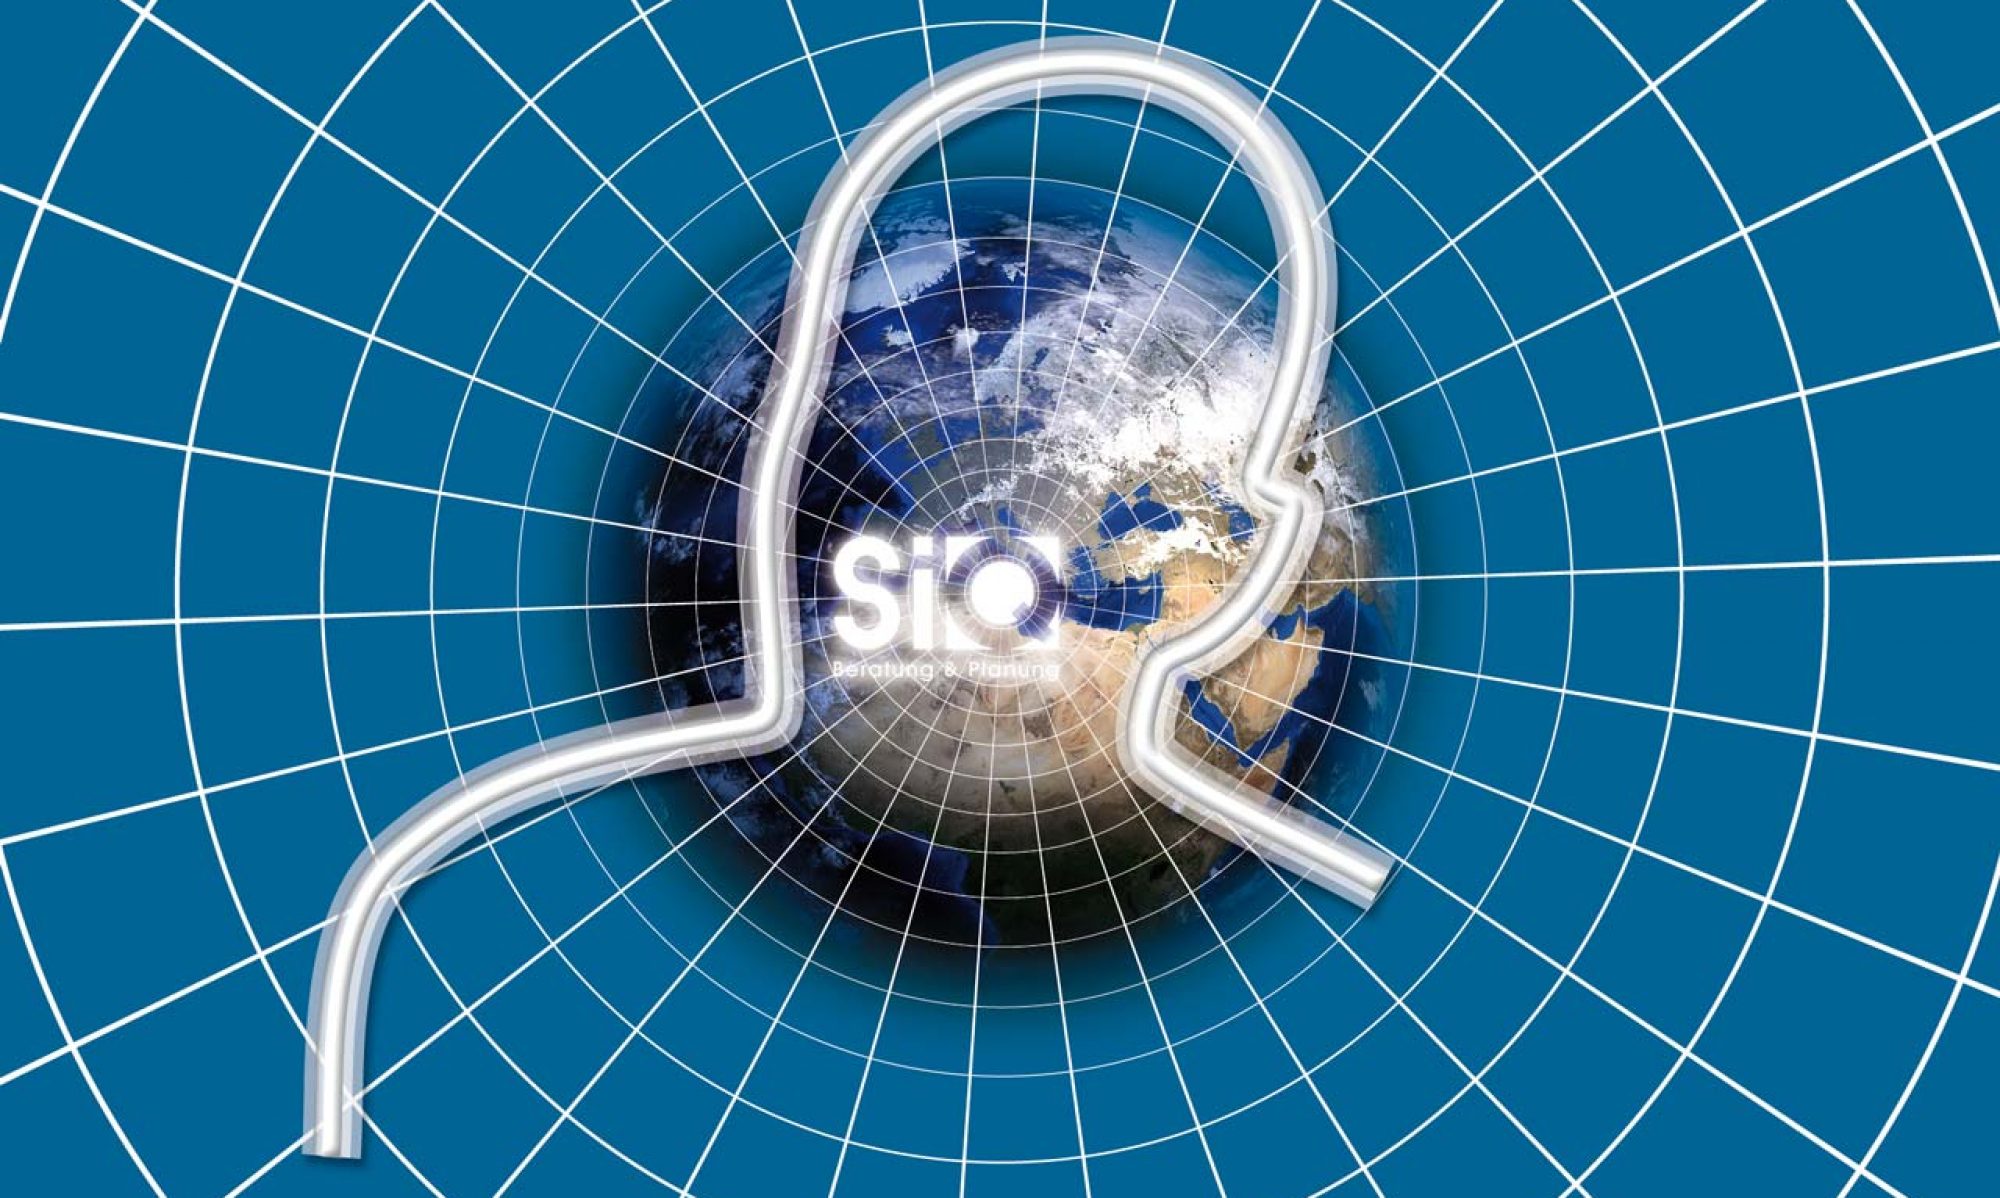 SiQ GmbH